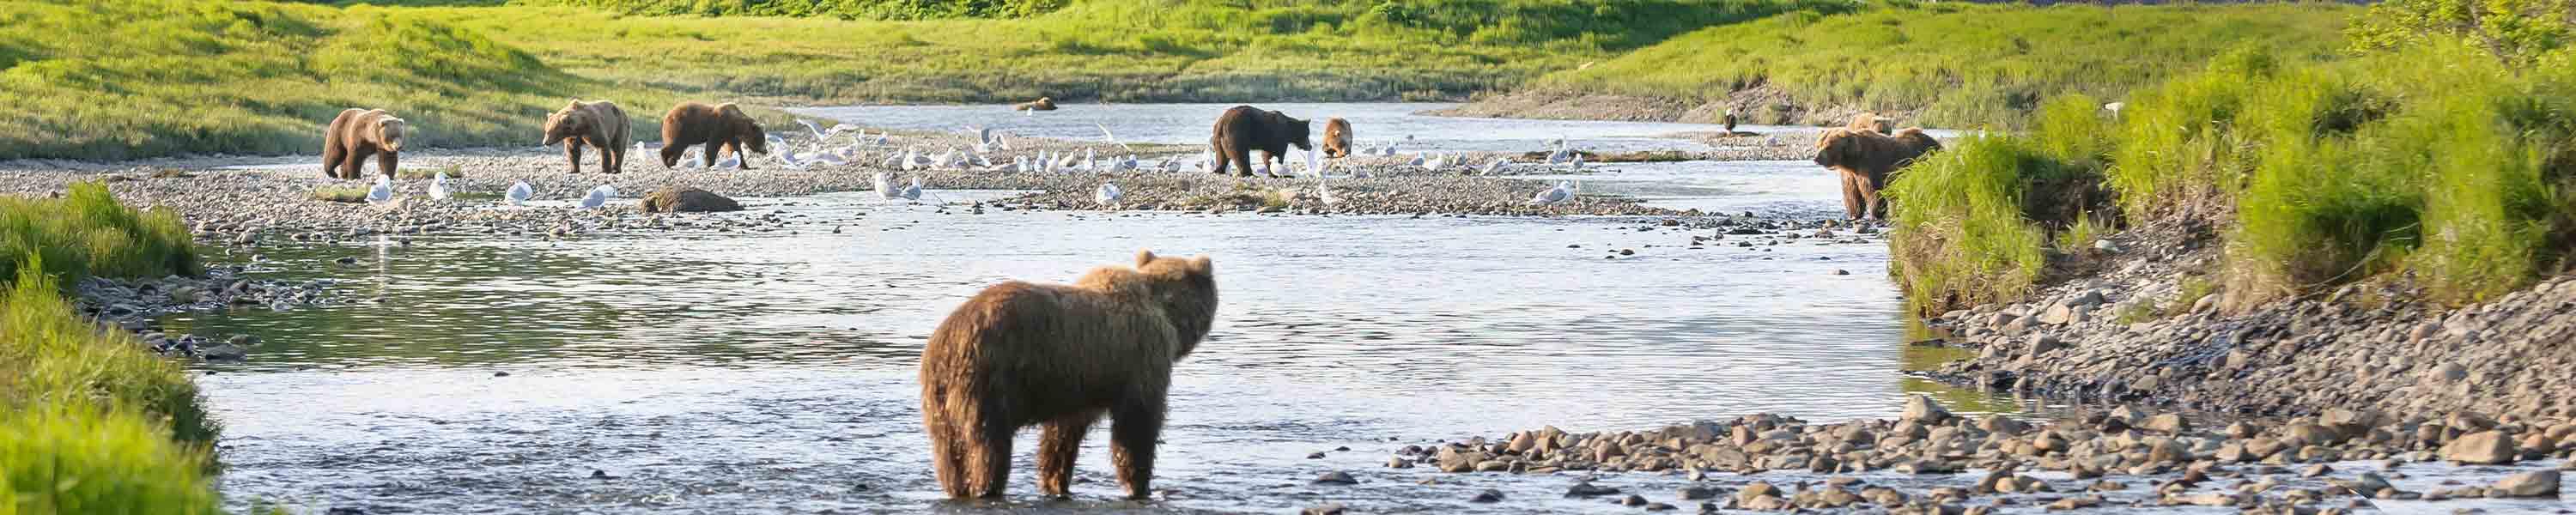 Bears in the Alaskan wilderness